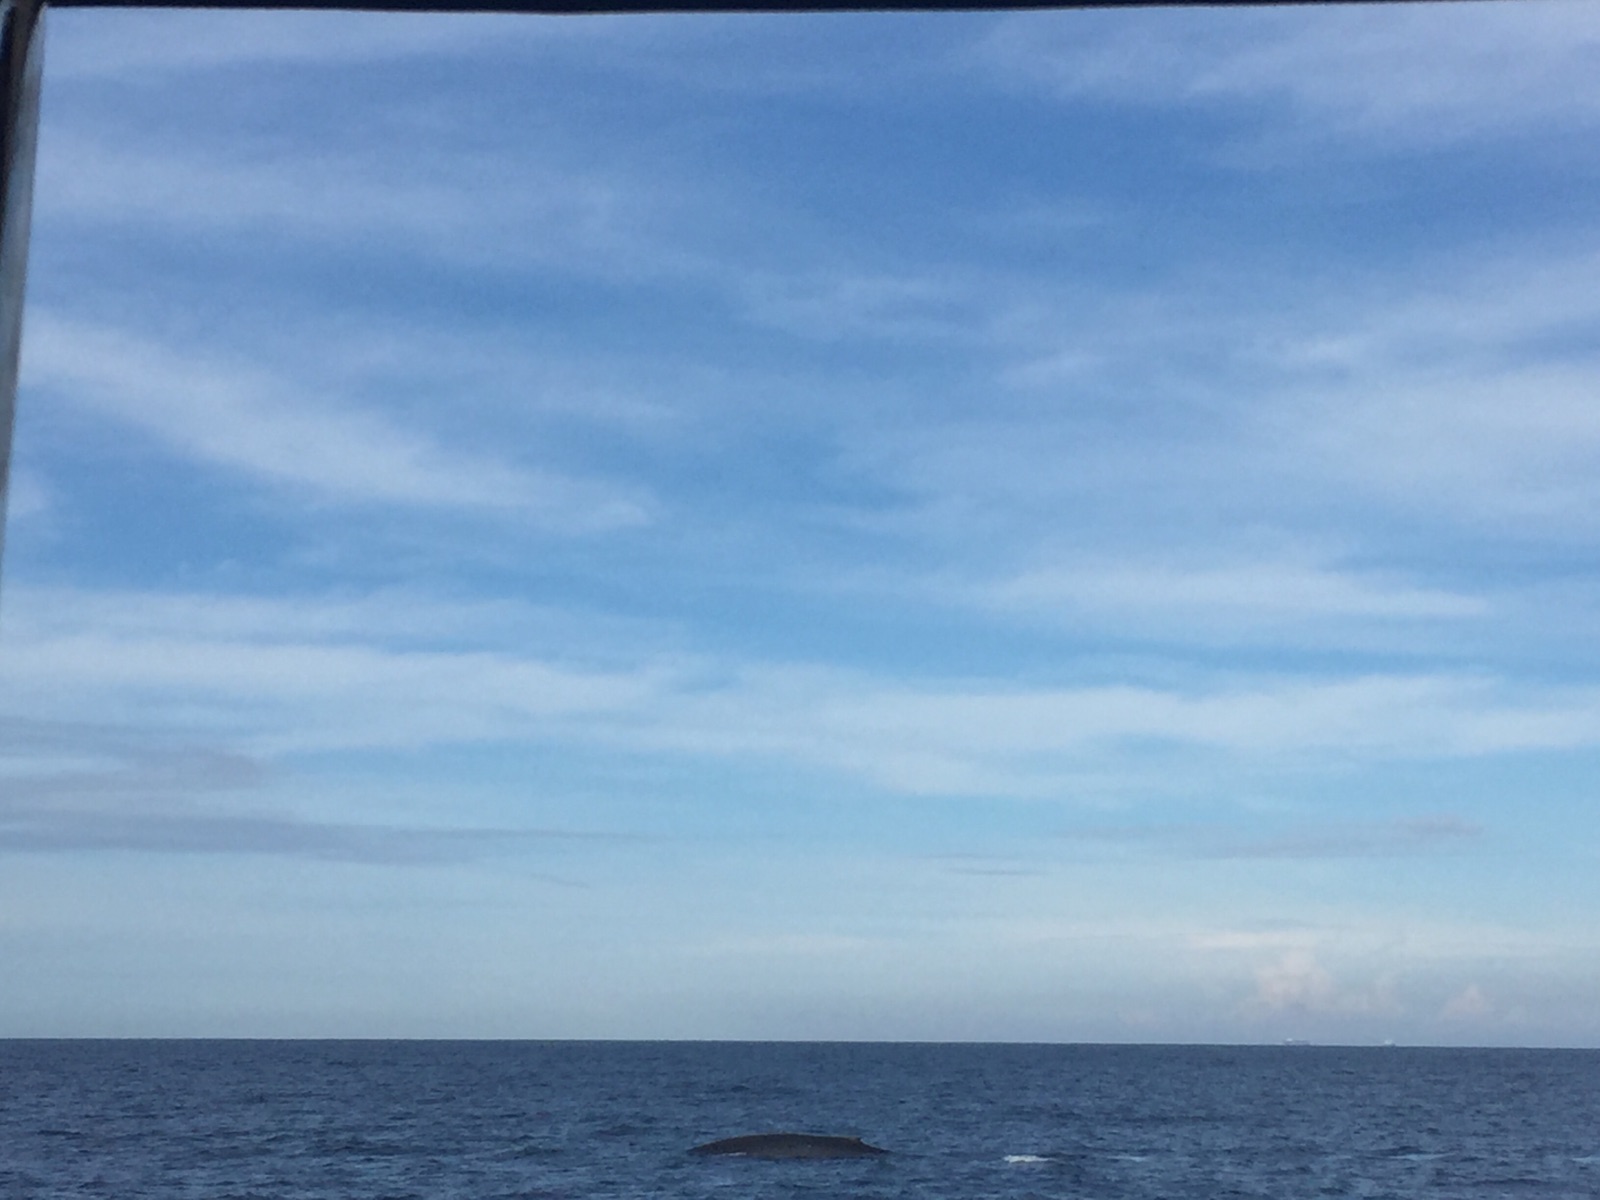 个人很喜欢出海，而且还用视频记录到了鲸鱼的出没，挺开心的，印度洋的海还